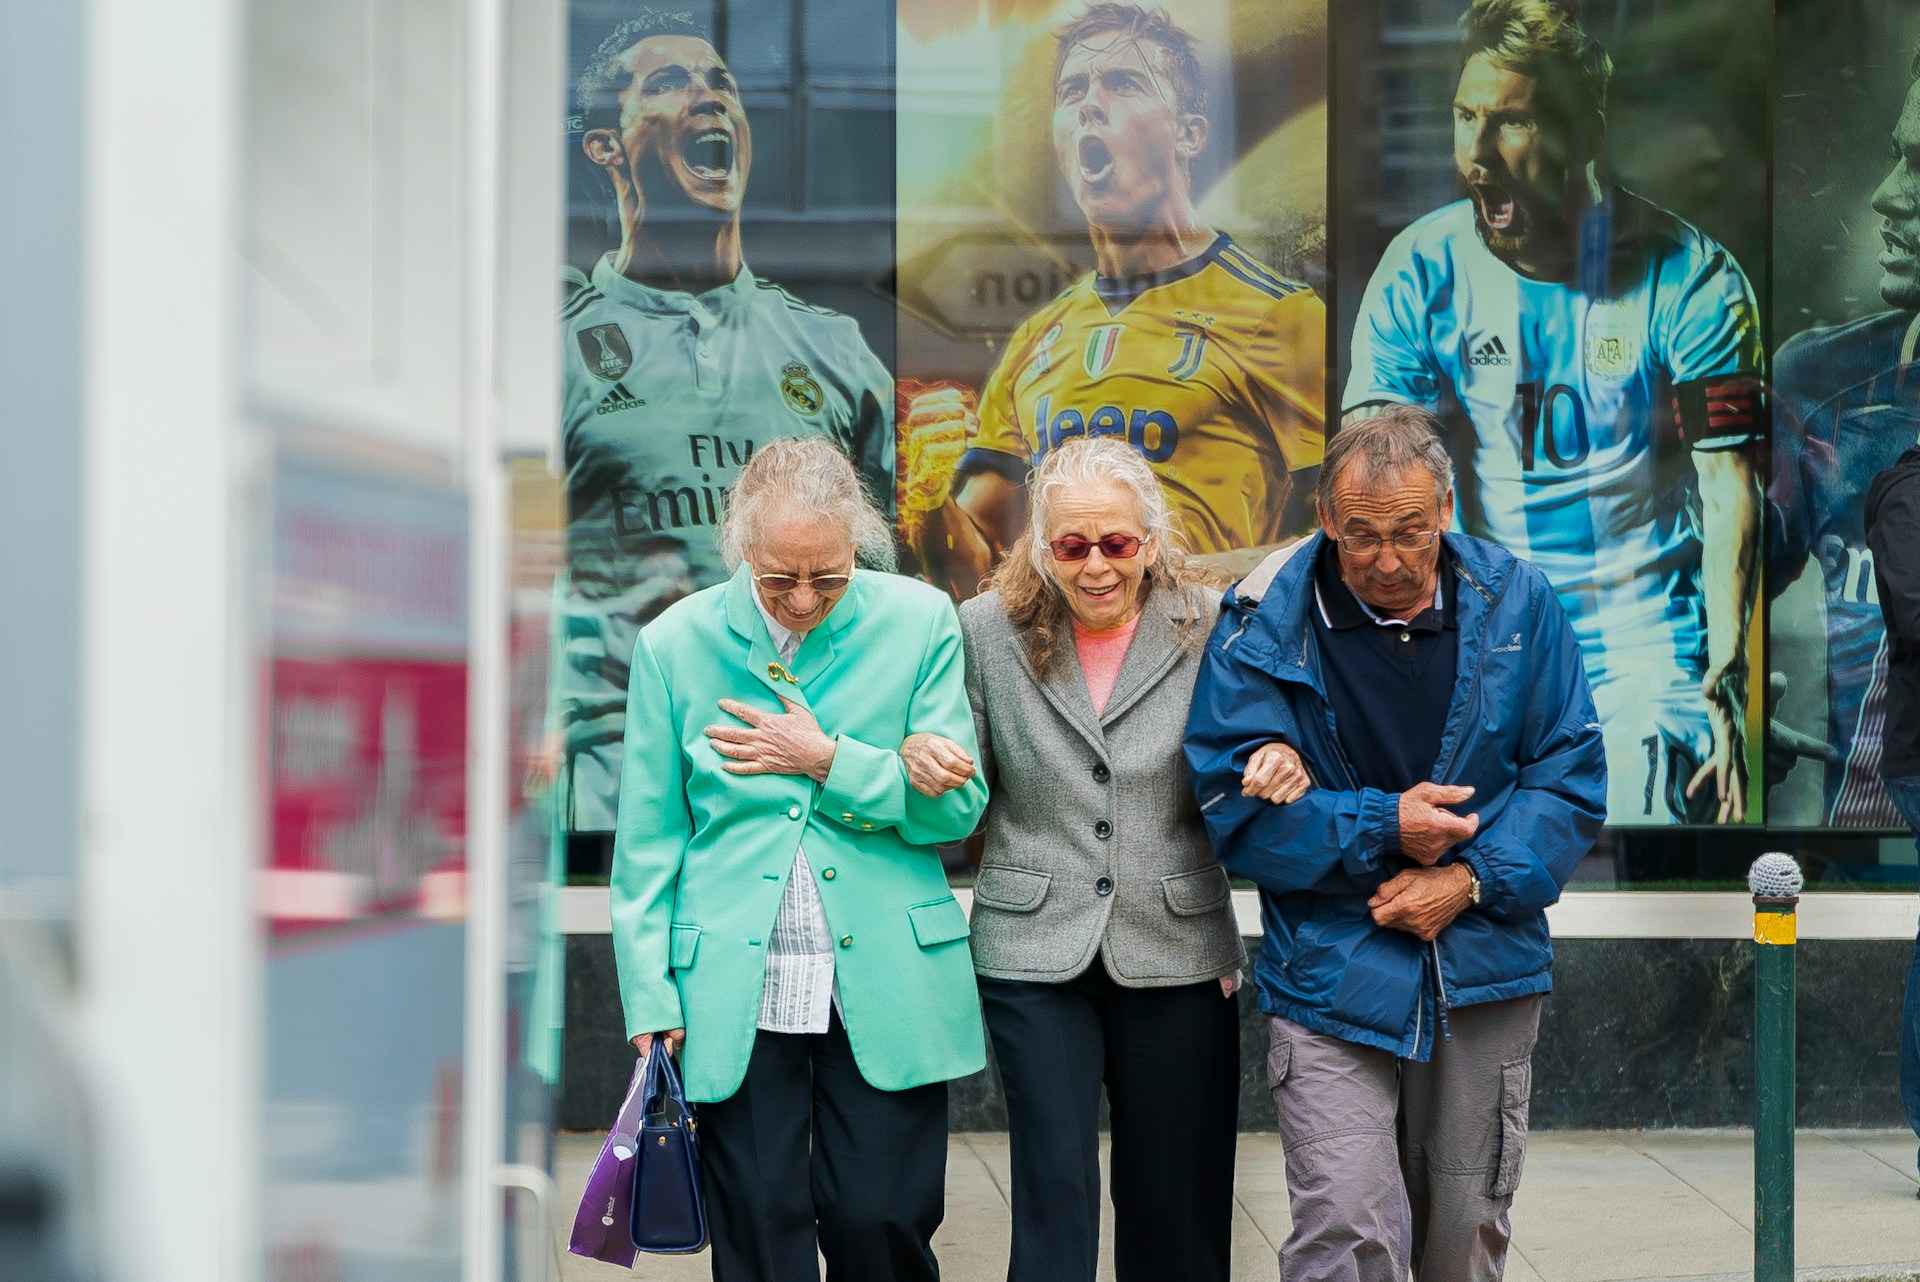 Drei ältere Menschen gehen untergehakt spazieren. Im Hintergrund drei junge berühmte Fußballer auf einem Plakat, deren Kleidungsfarben die Kleidung der Älteren aufgreifen.